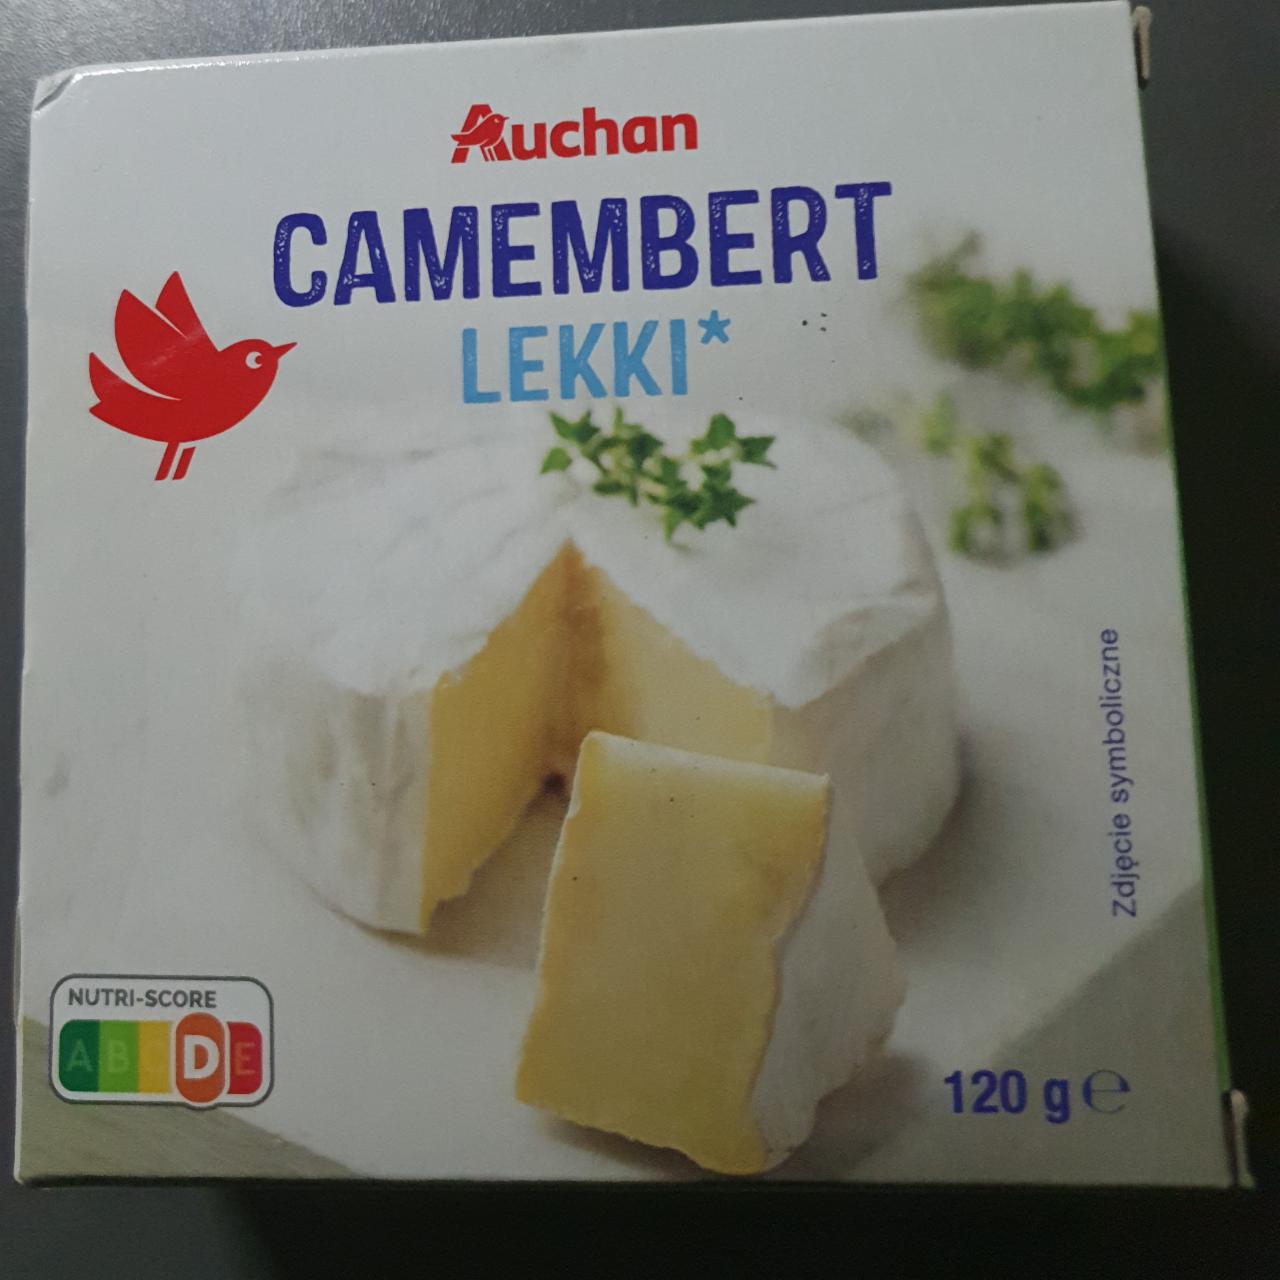 Zdjęcia - Camembert lekki auchan